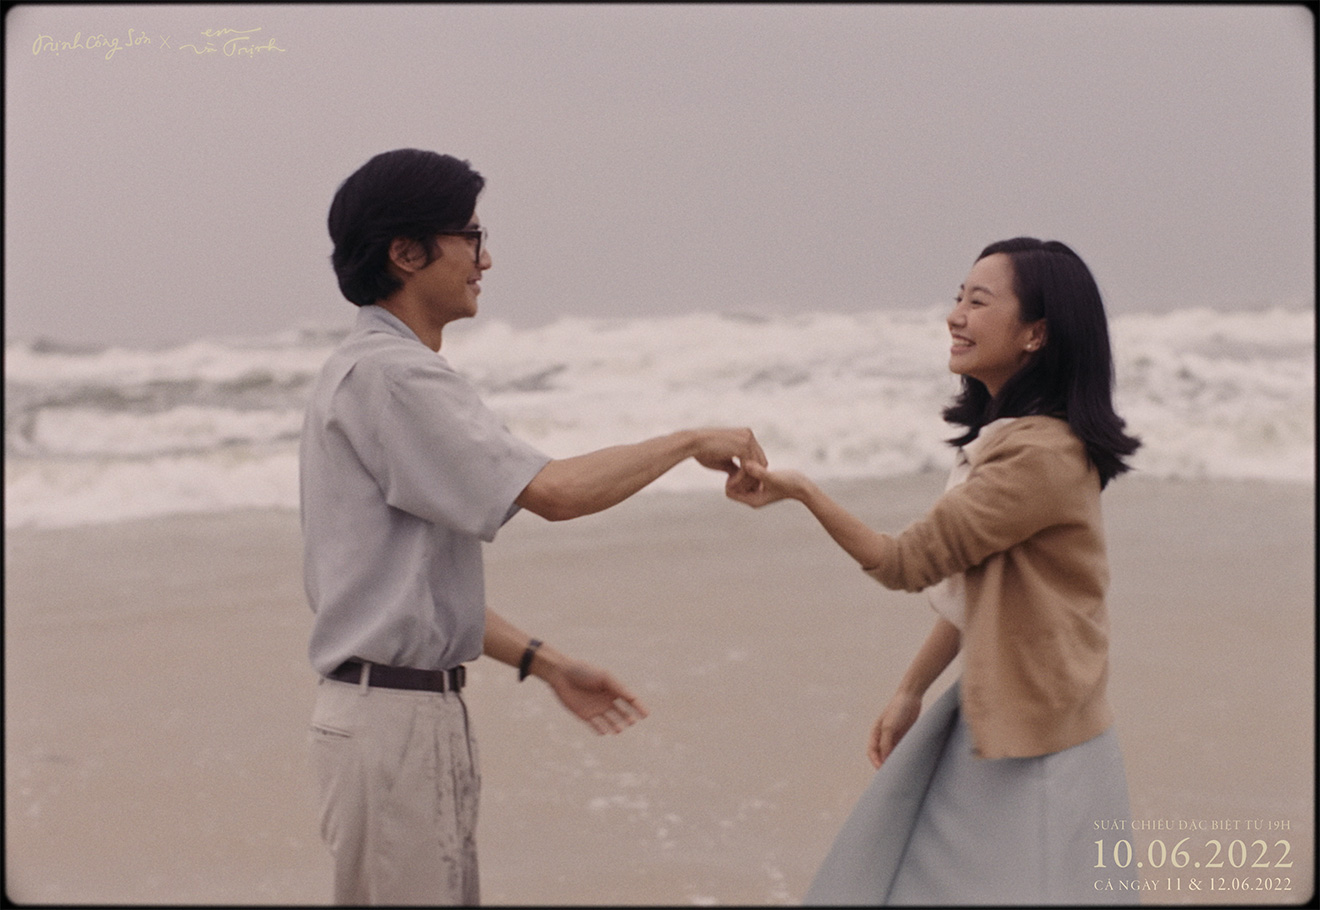 [Review] Trịnh Công Sơn - Tái hiện tuổi trẻ nồng nhiệt, lãng mạn và đầy những tiếc nuối - ảnh 3